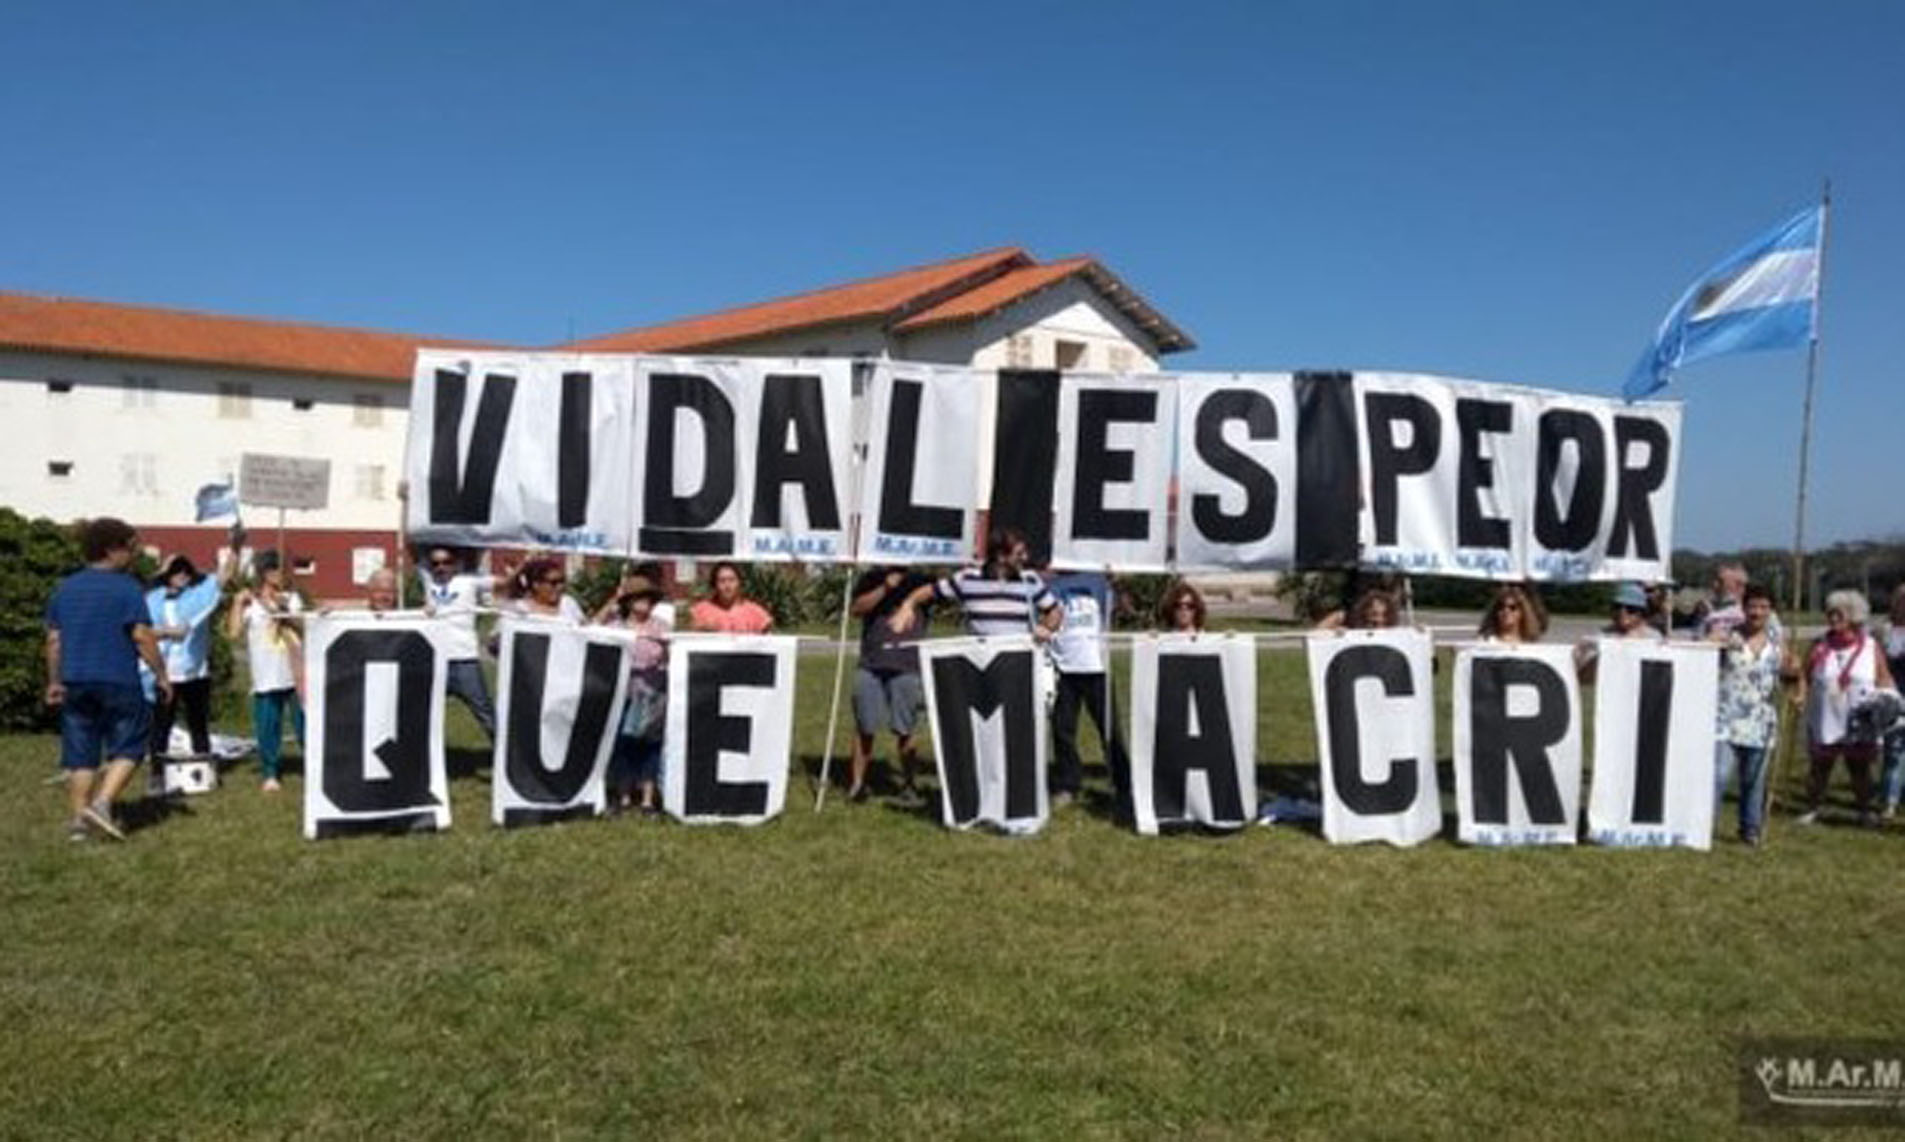 “Vidal es peor que Macri”